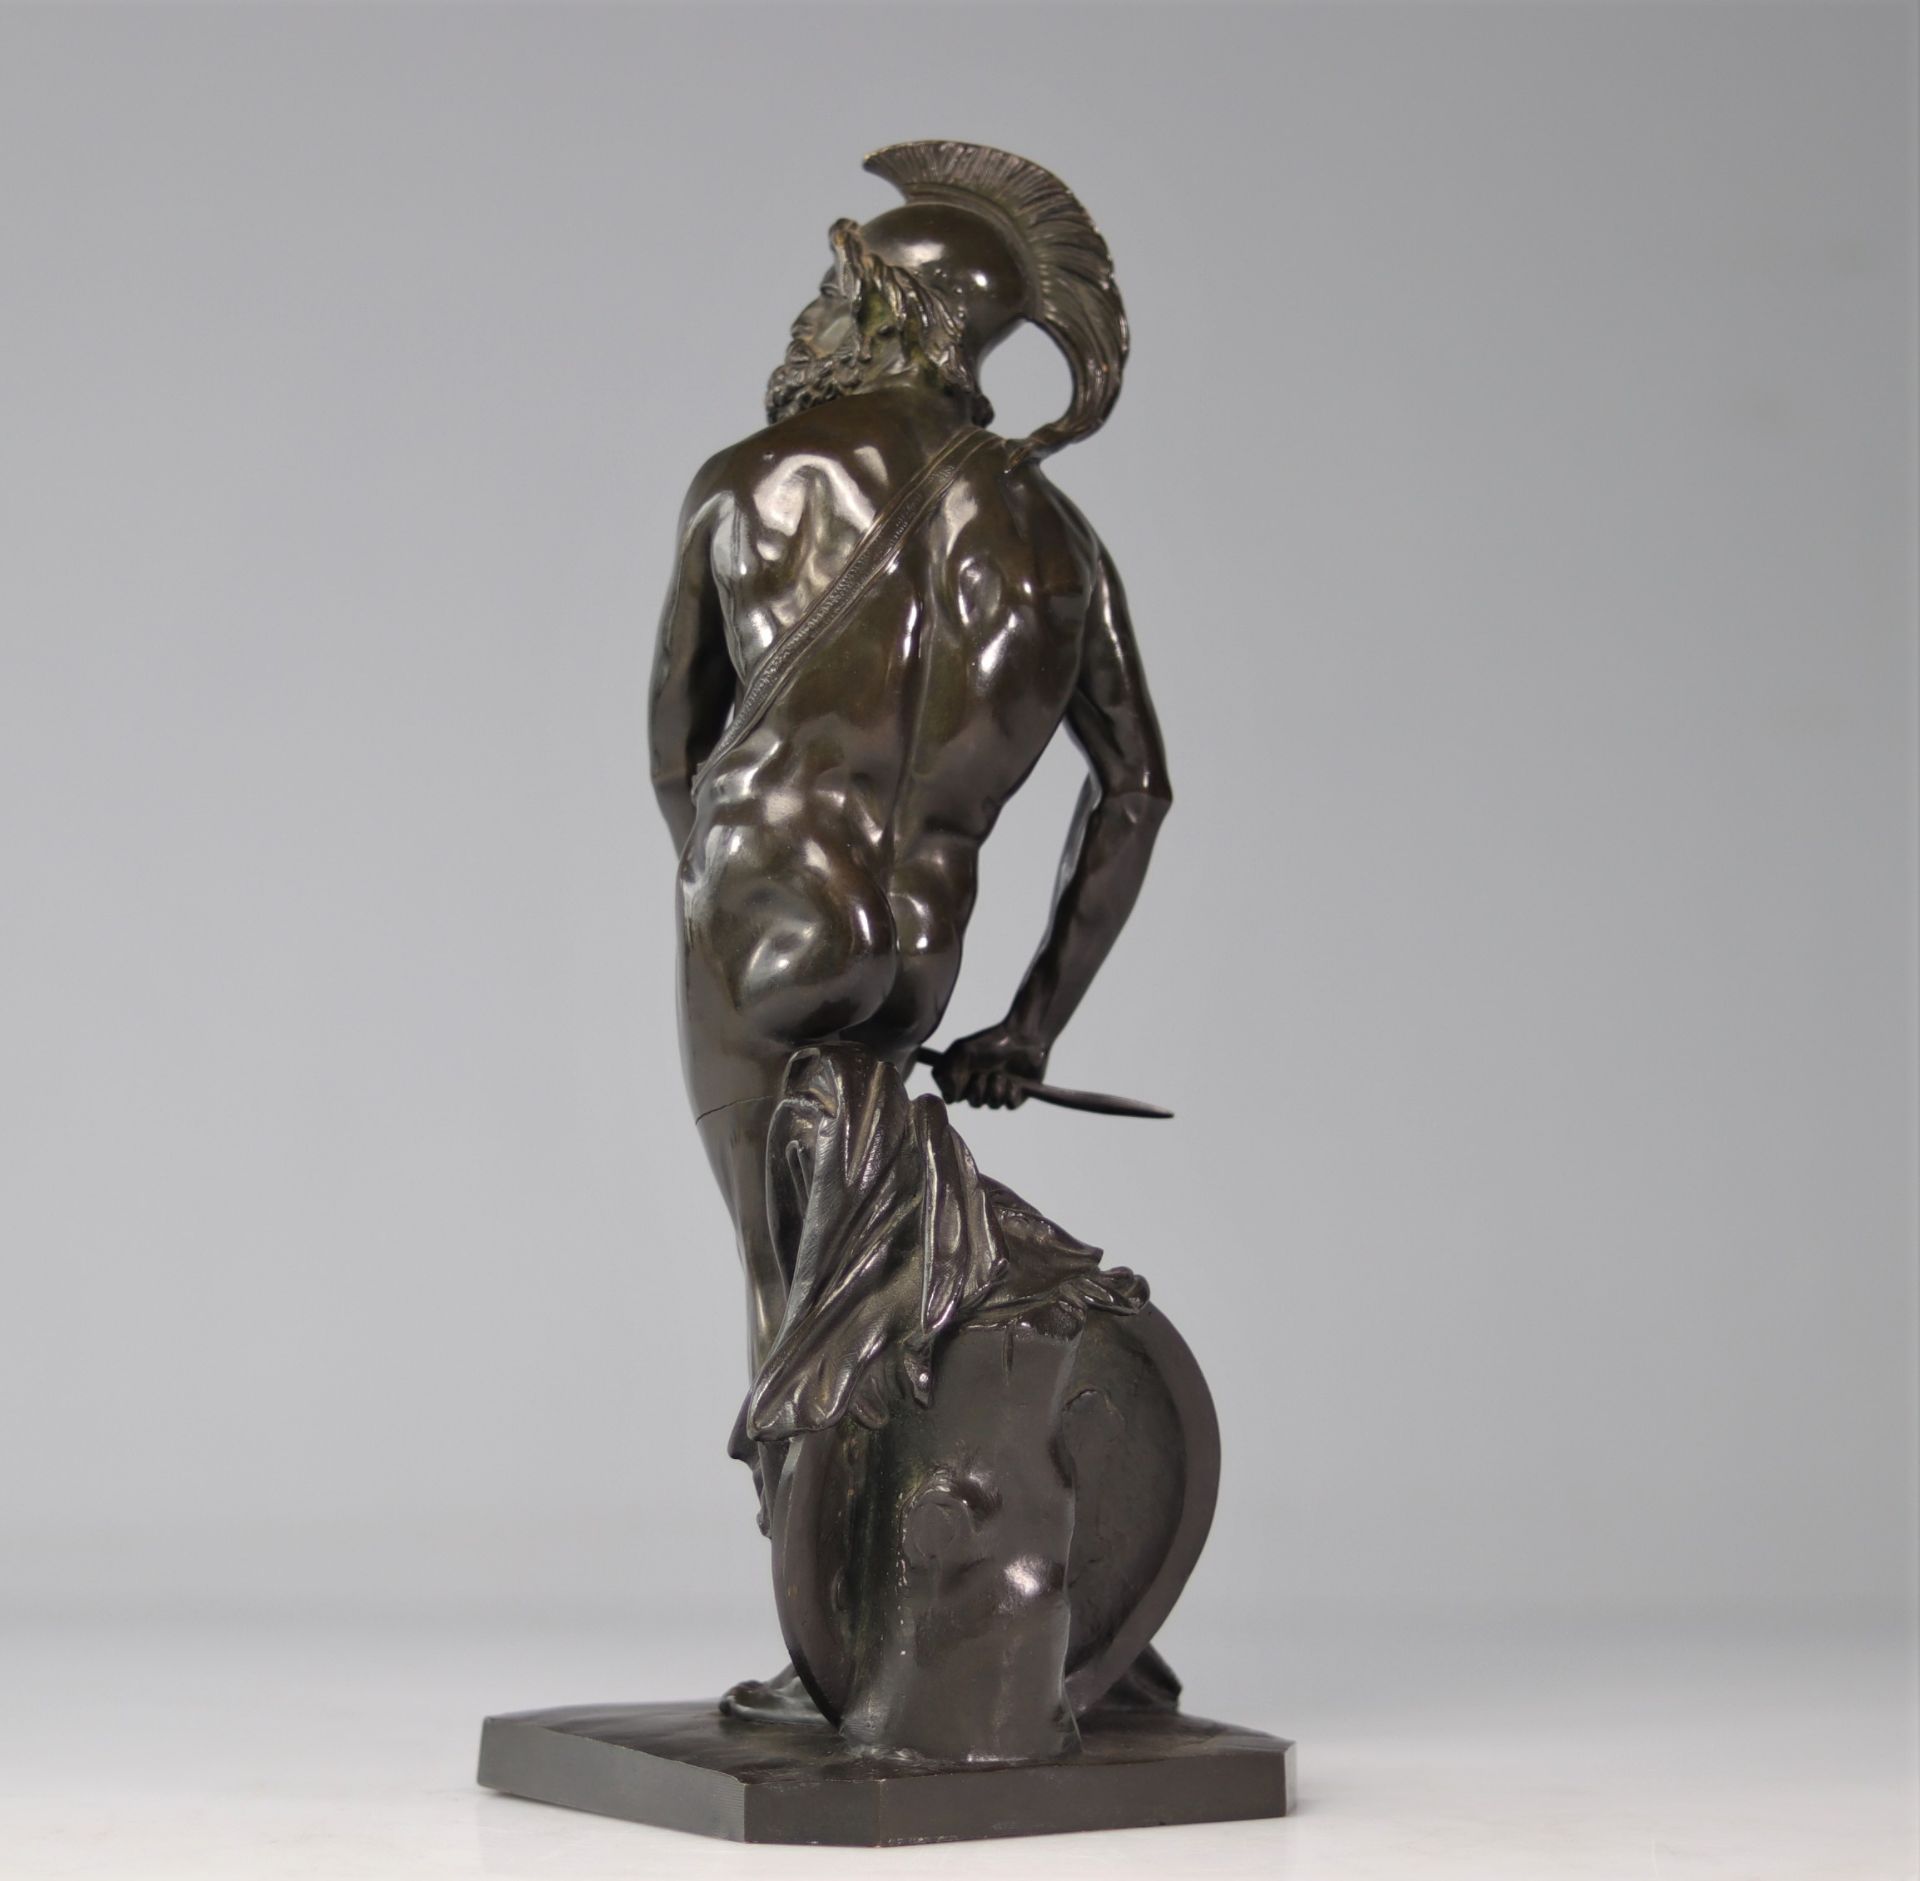 Pierre Jean DAVID D'ANGERS (1788-1856) bronze "Philopoemen" - Bild 2 aus 6